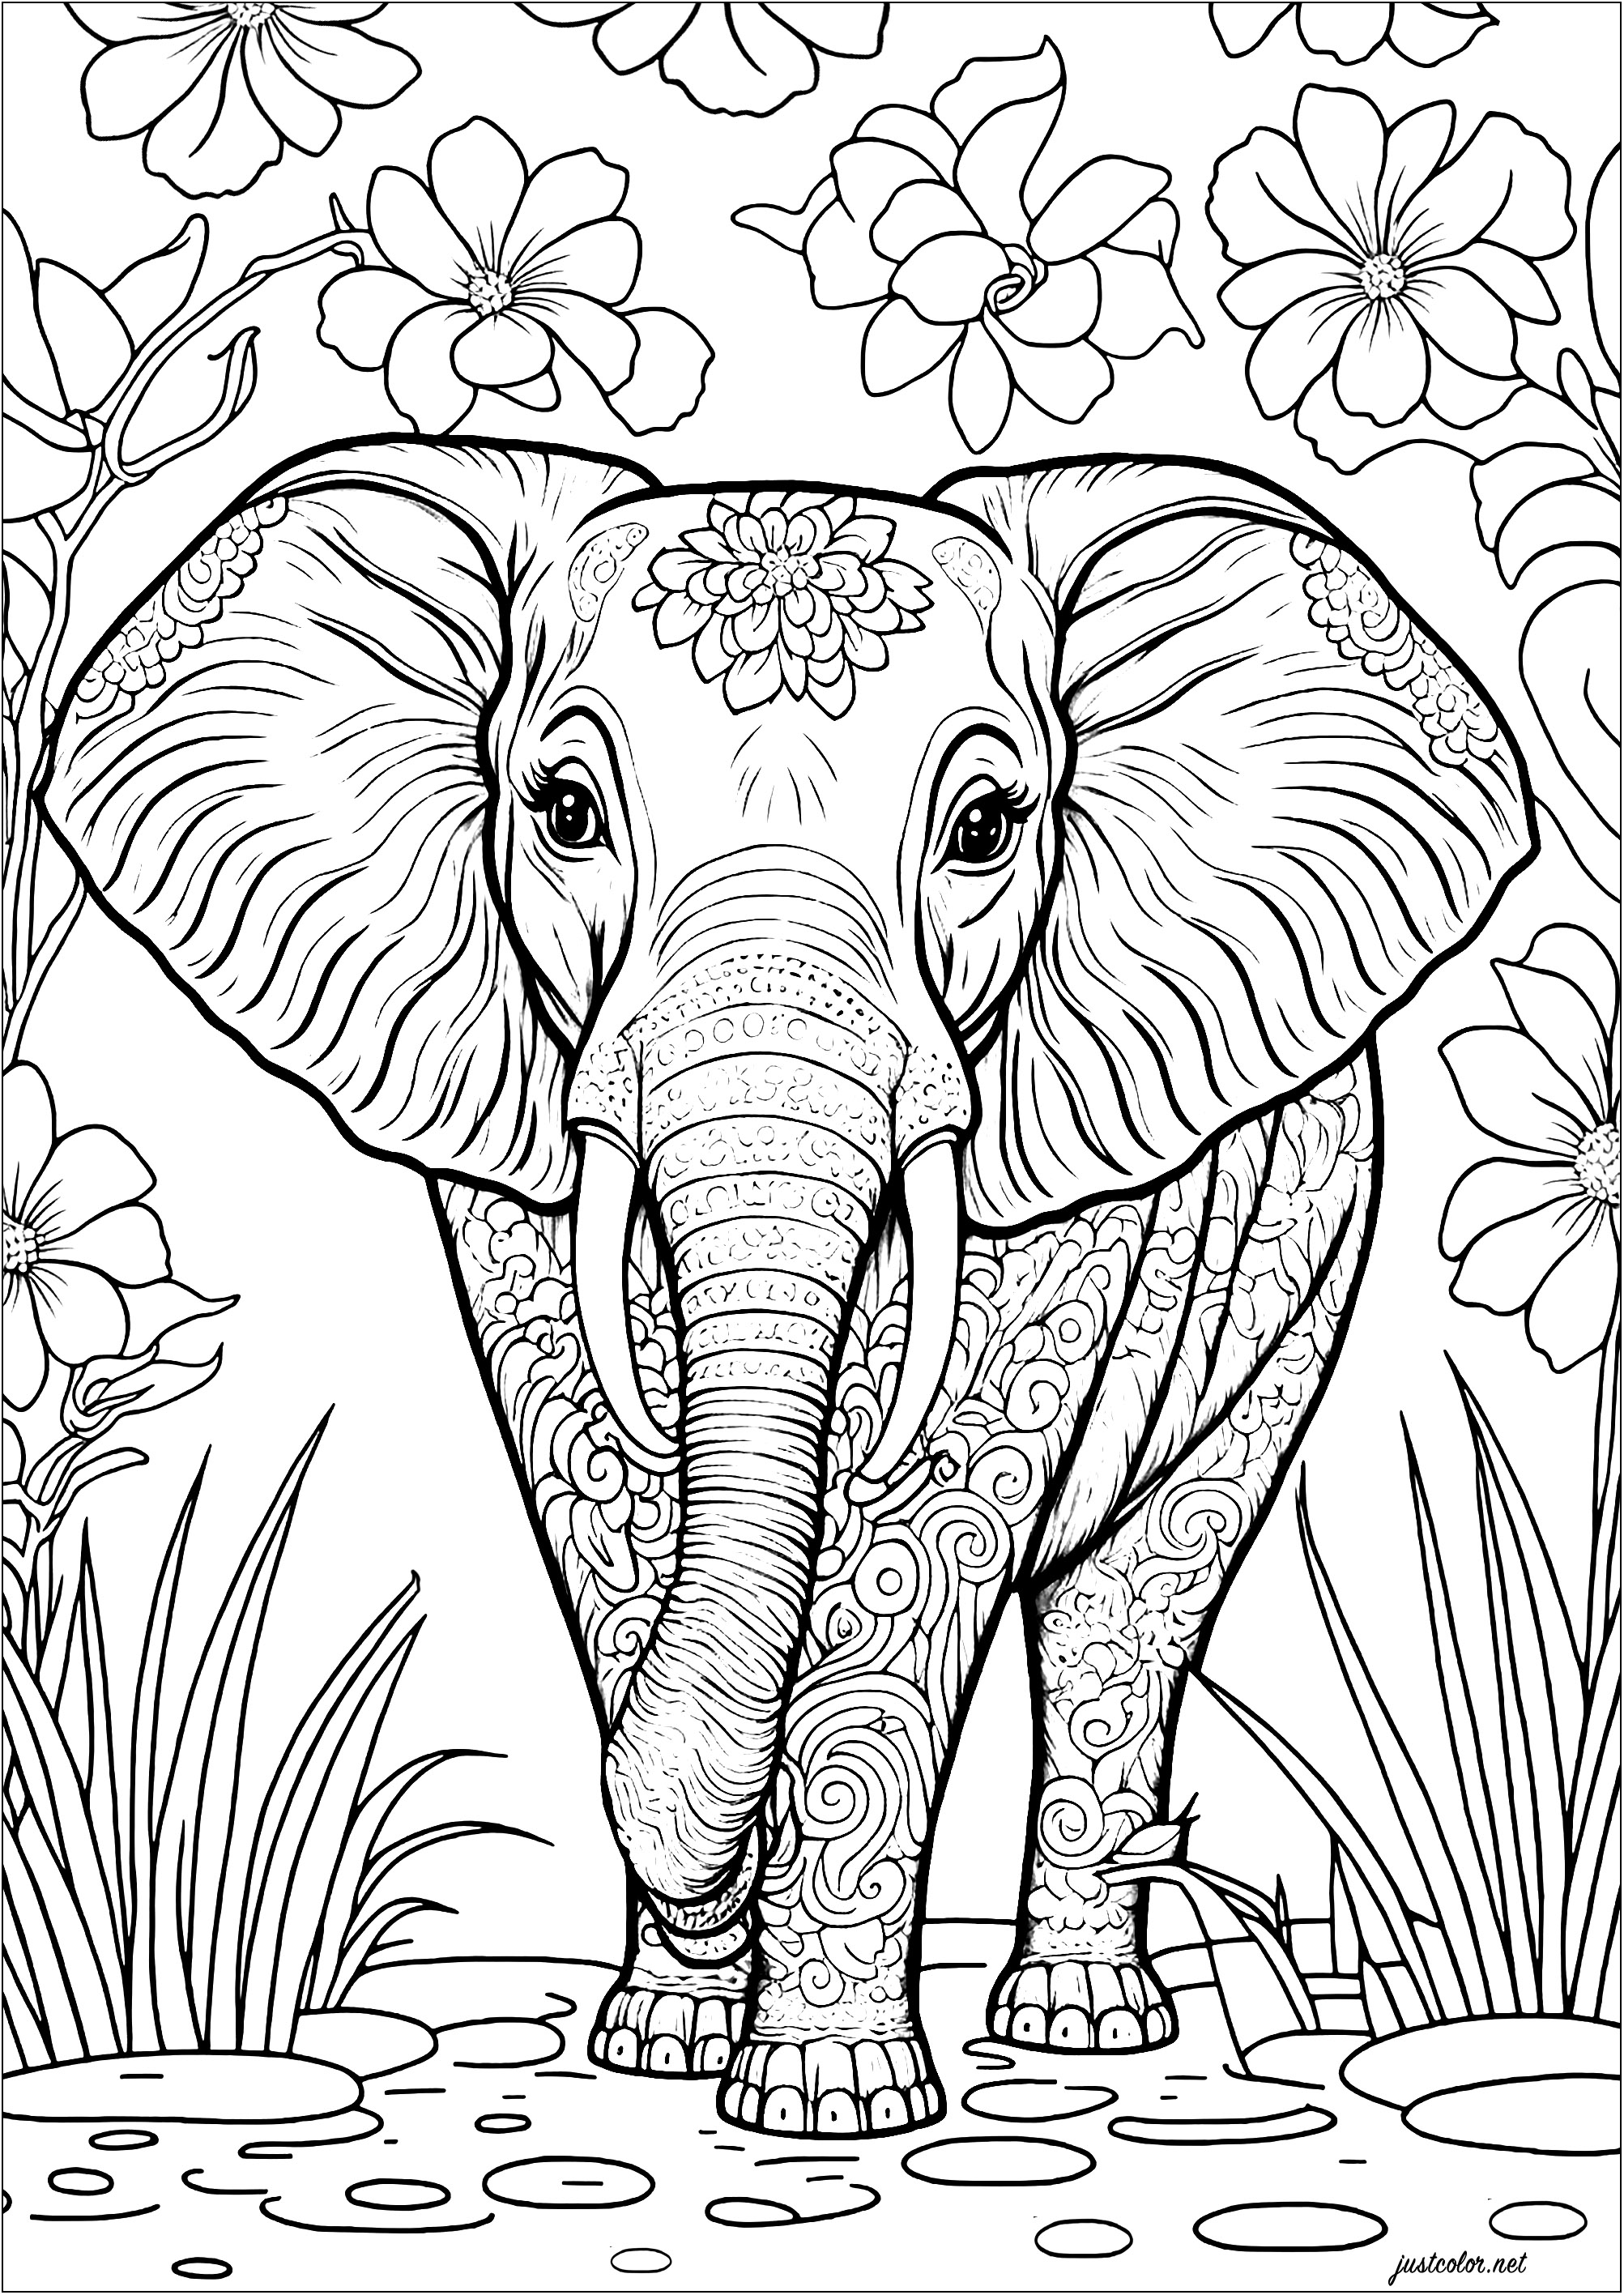 Elefante para colorir com vários motivos para colorir. O corpo do elefante está decorado com espirais, riscas e pontos, e as suas orelhas estão cheias de formas geométricas e outros padrões. Pinta também as bonitas flores e a vegetação no fundo.